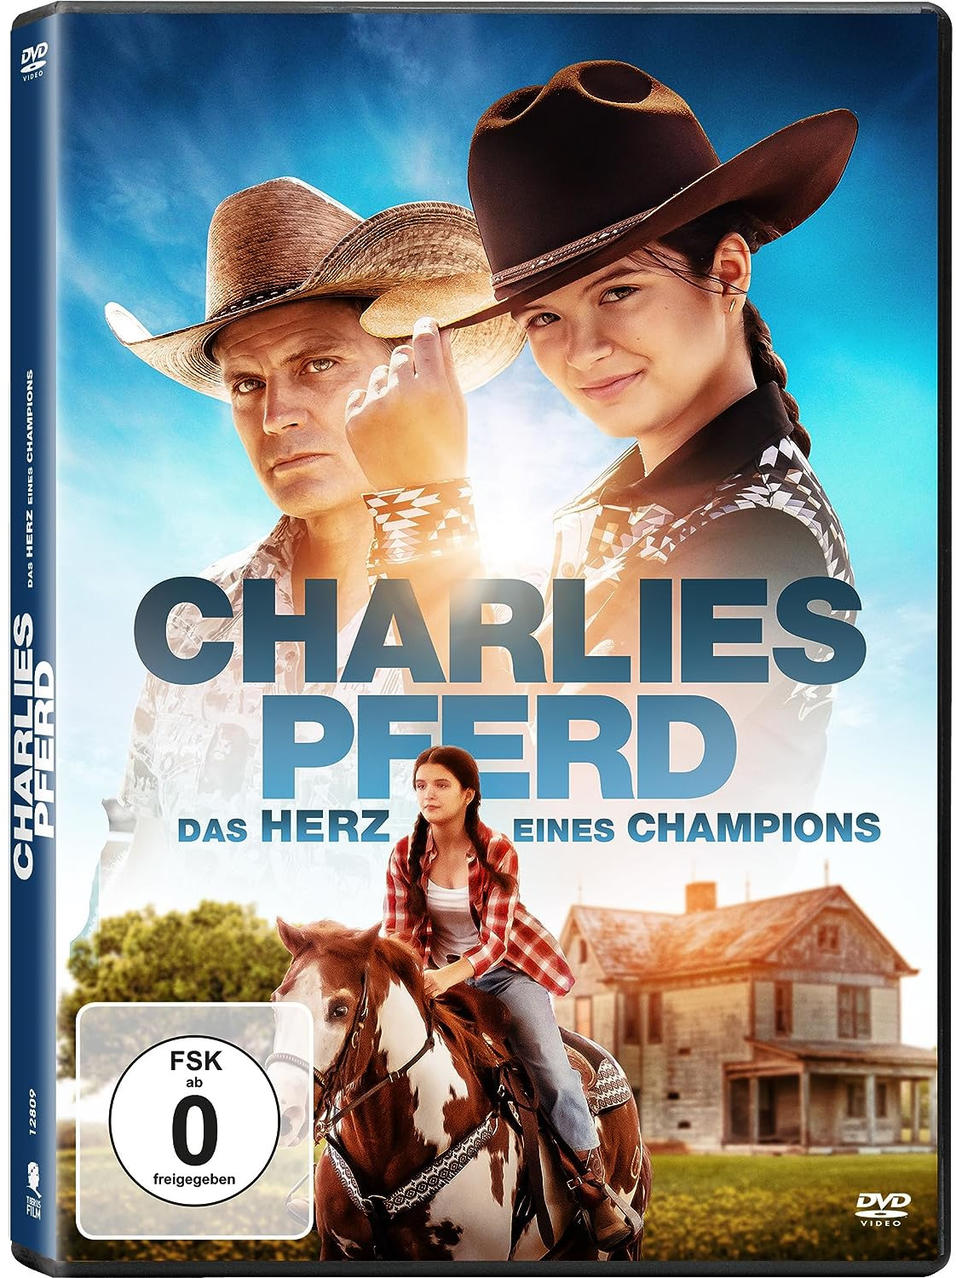 - Champions Das Pferd eines DVD Herz Charlies